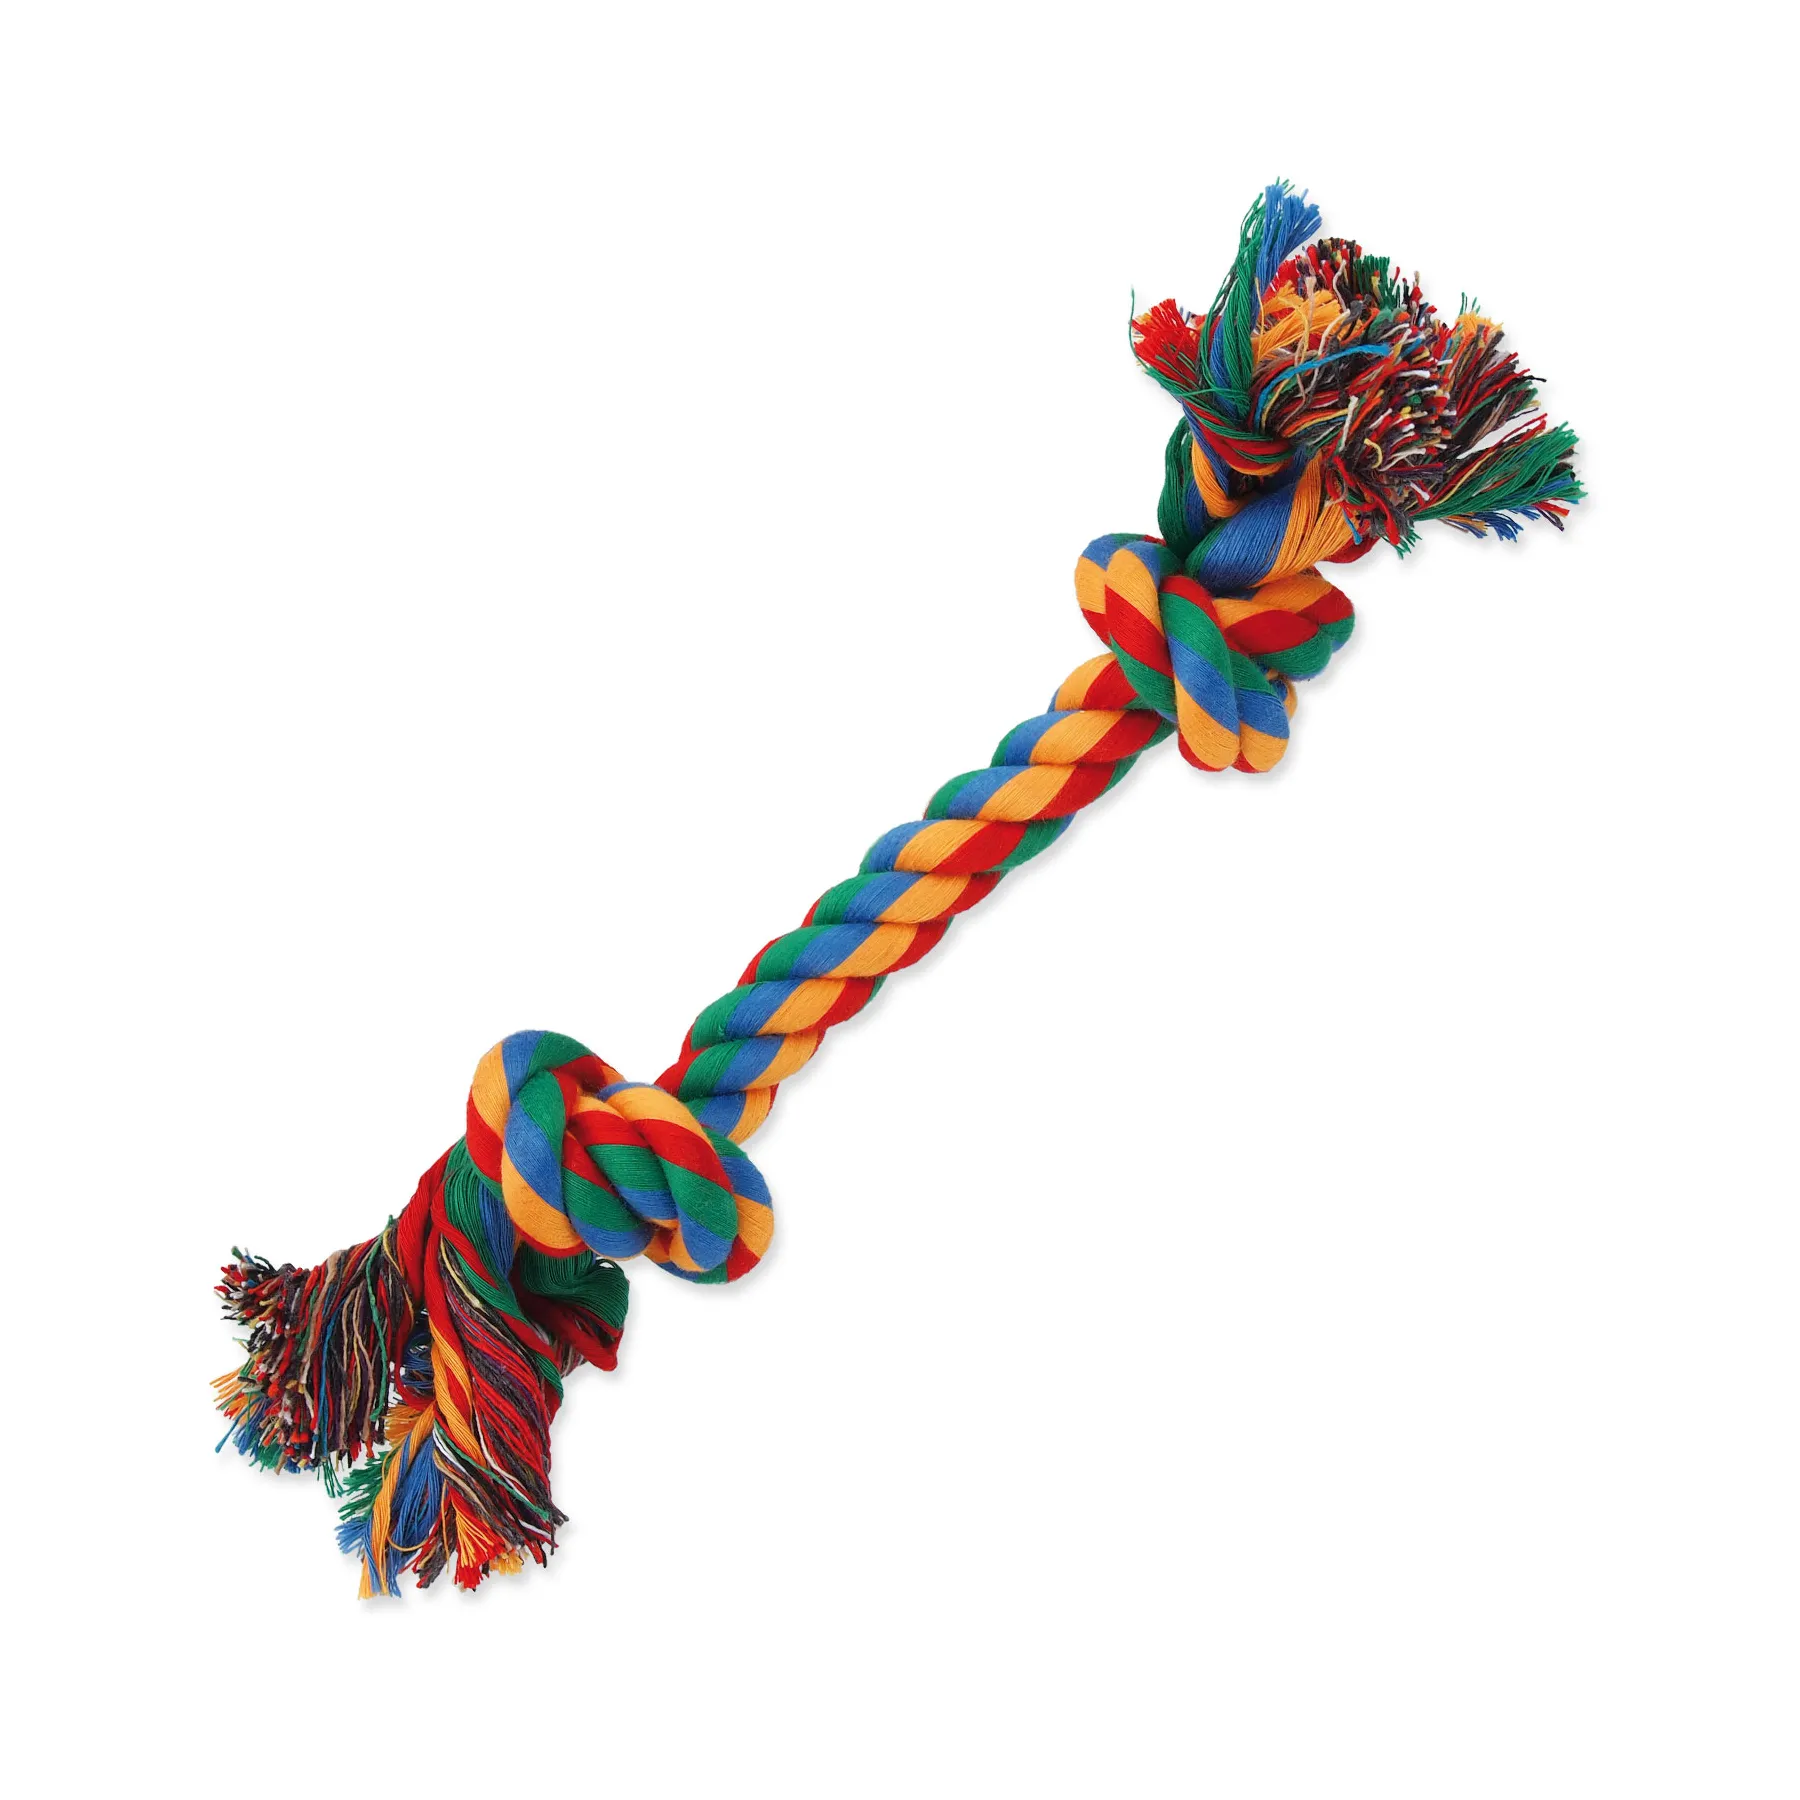 Dog Fantasy Hračka uzel bavlněný barevný 2 knoty 25 cm